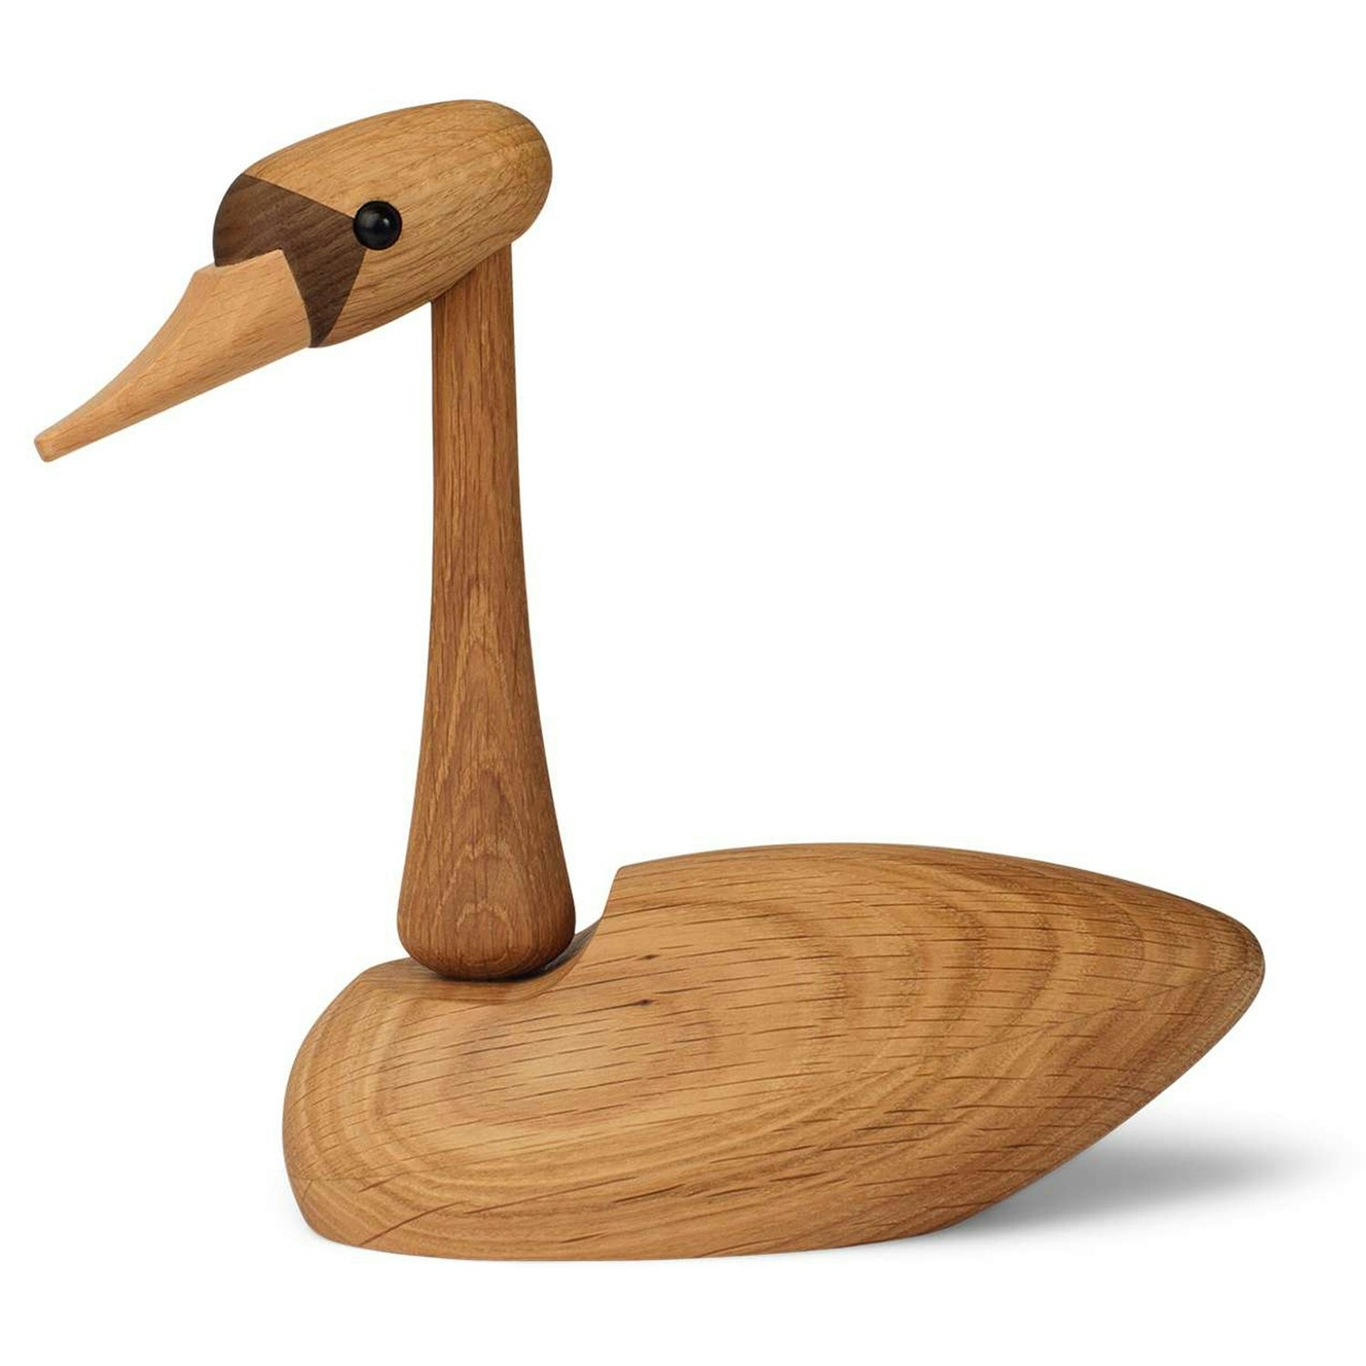 The Swan Wooden Figurine 13 cm, Oak